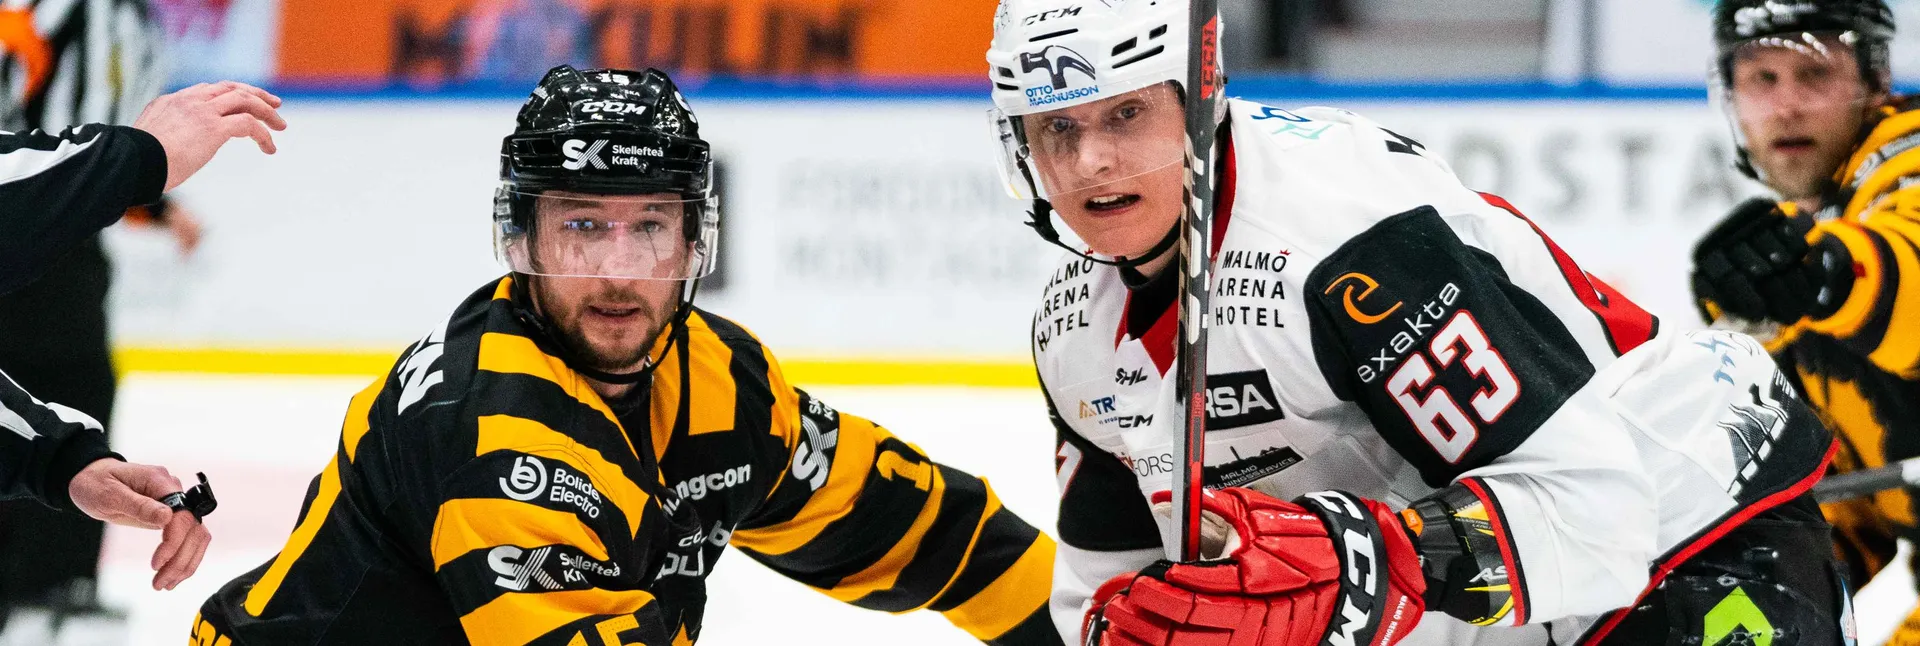 Ishockeymatch mellan Malmö och Skellefteå